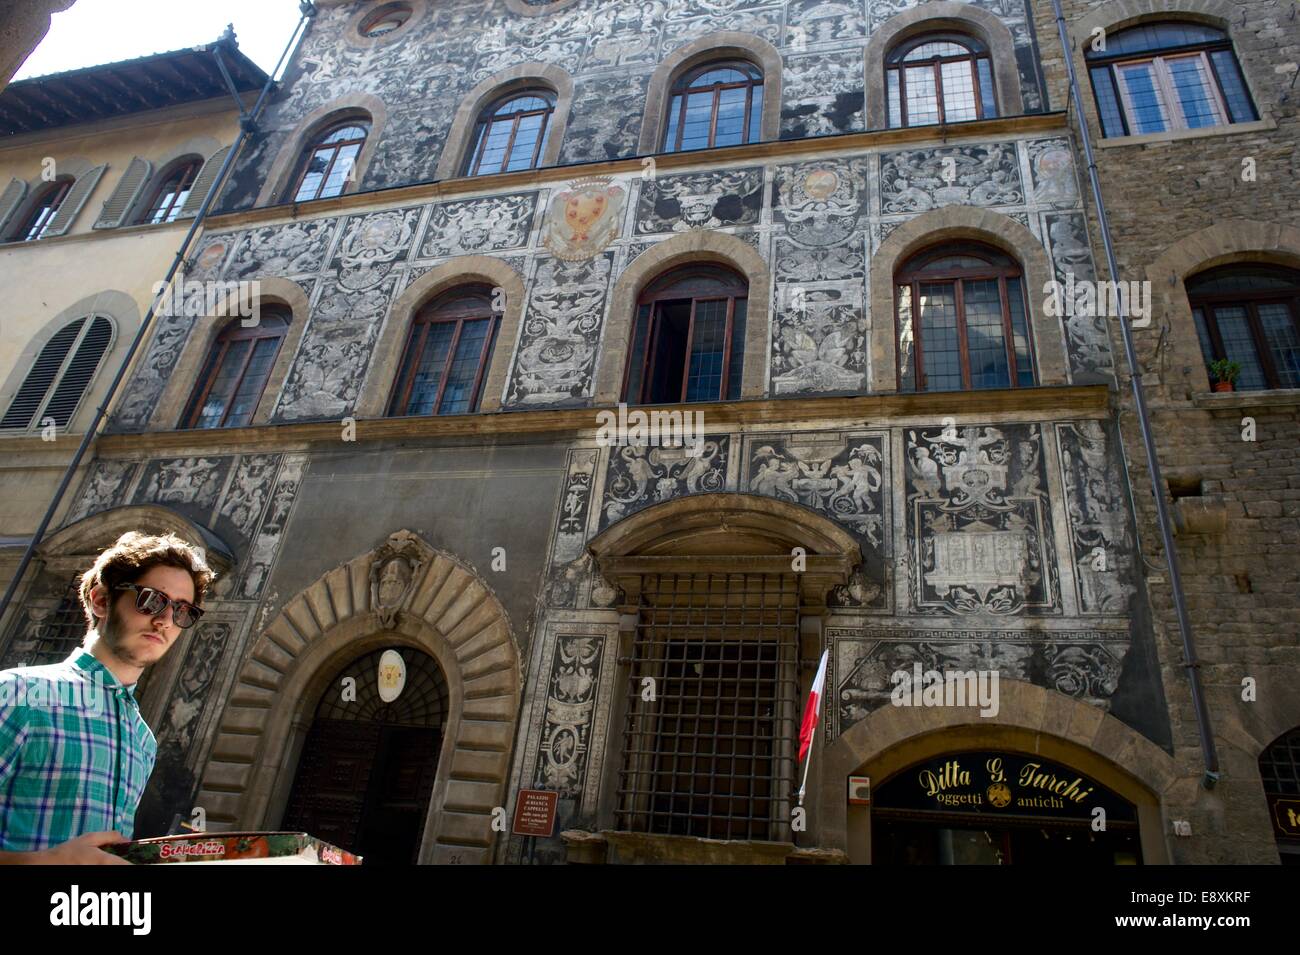 Palazzo di Bianca Cappello, Via Maggio, Firenze Foto stock - Alamy